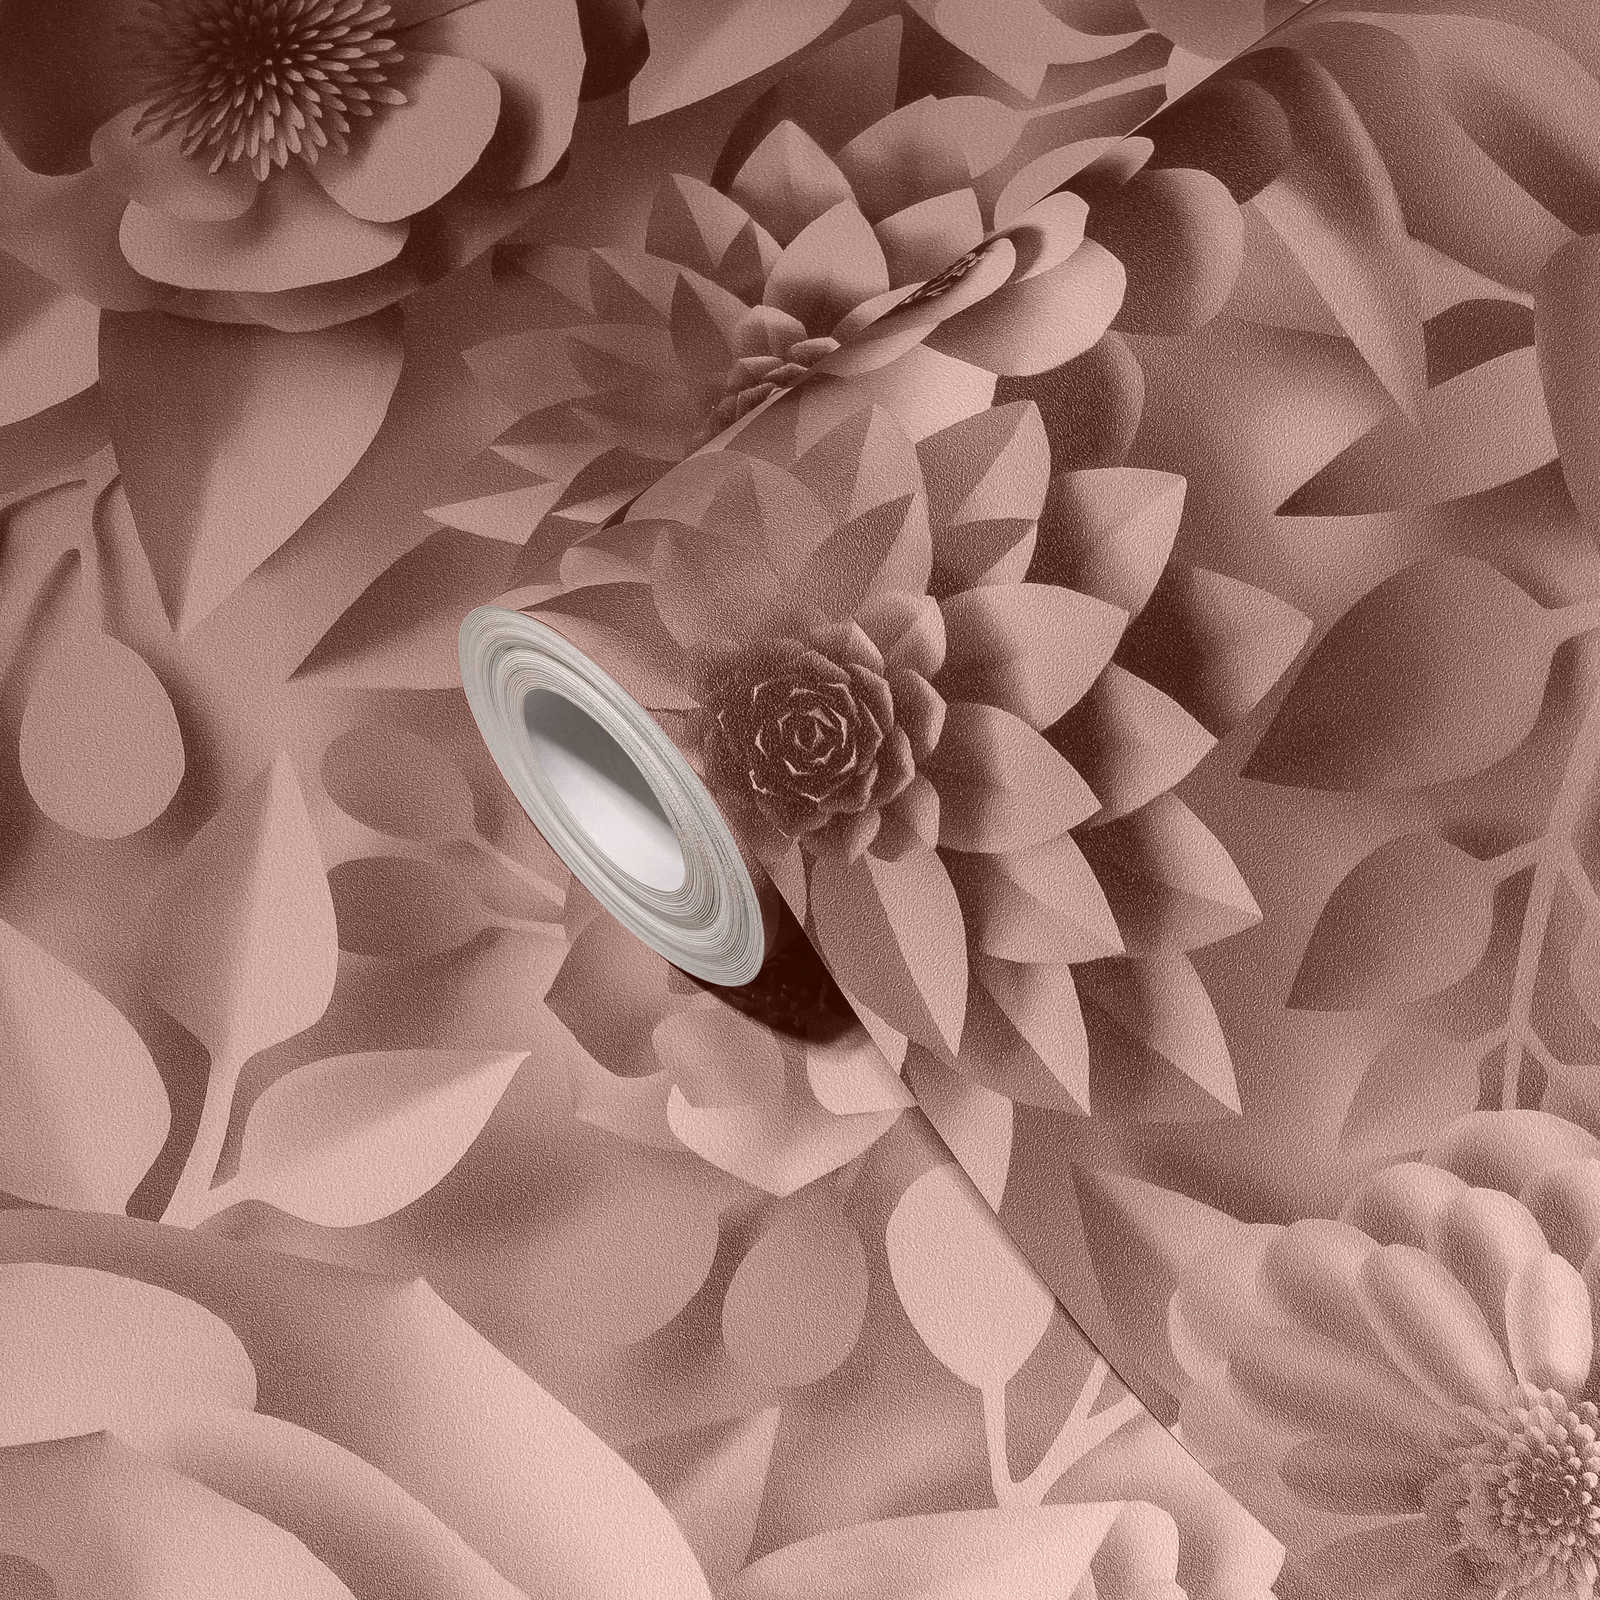             3D Behang met Papieren Bloemen, Grafisch Bloemenpatroon - Roze
        